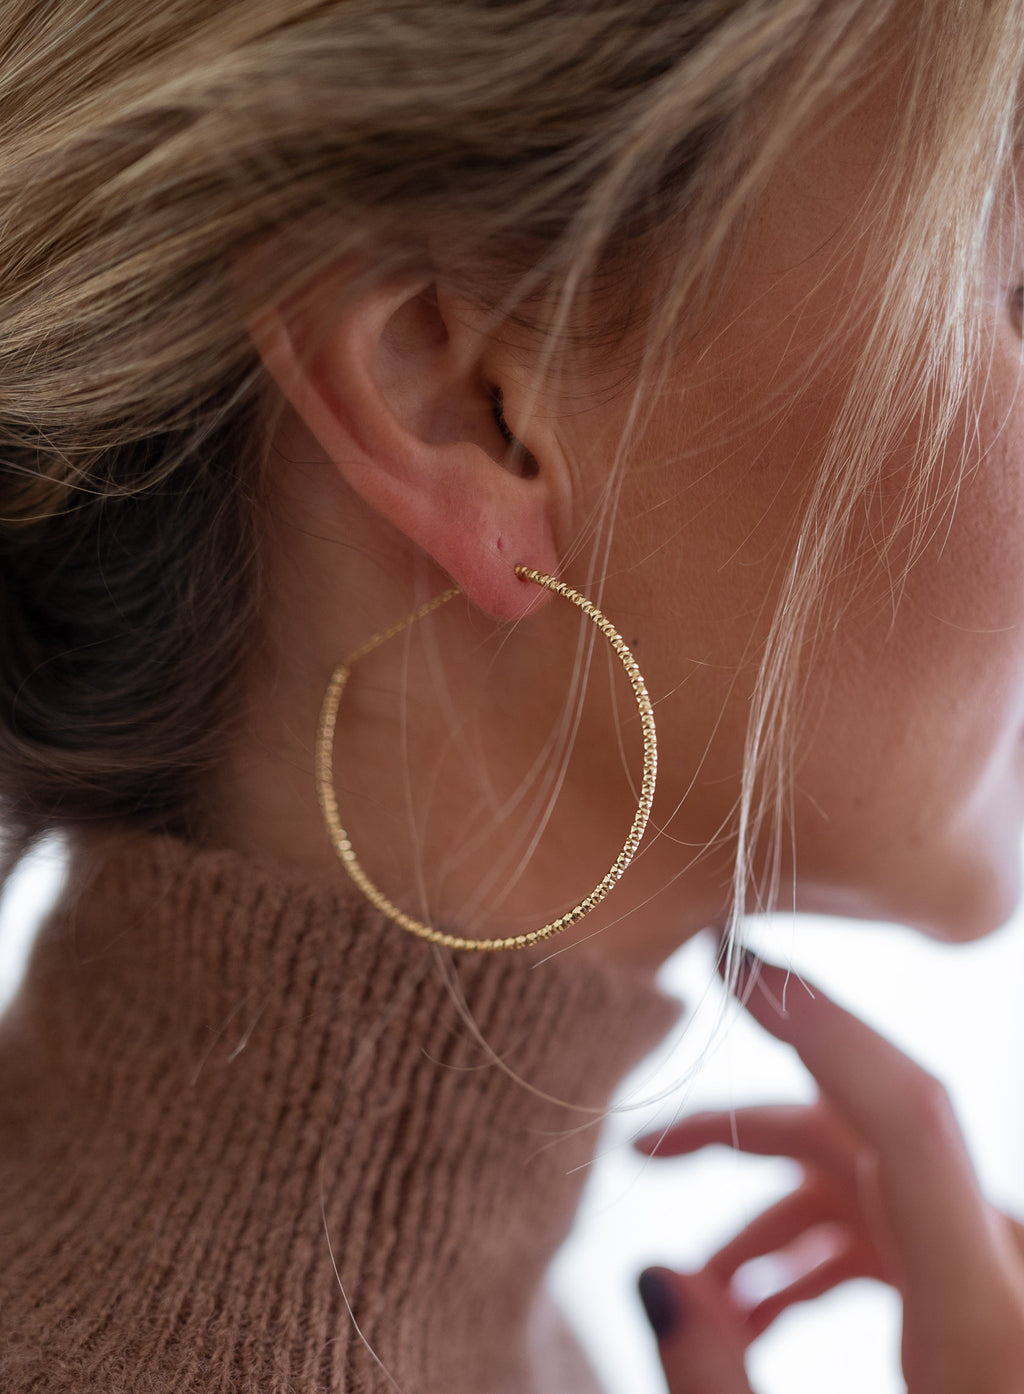 Stanou earrings - Golden